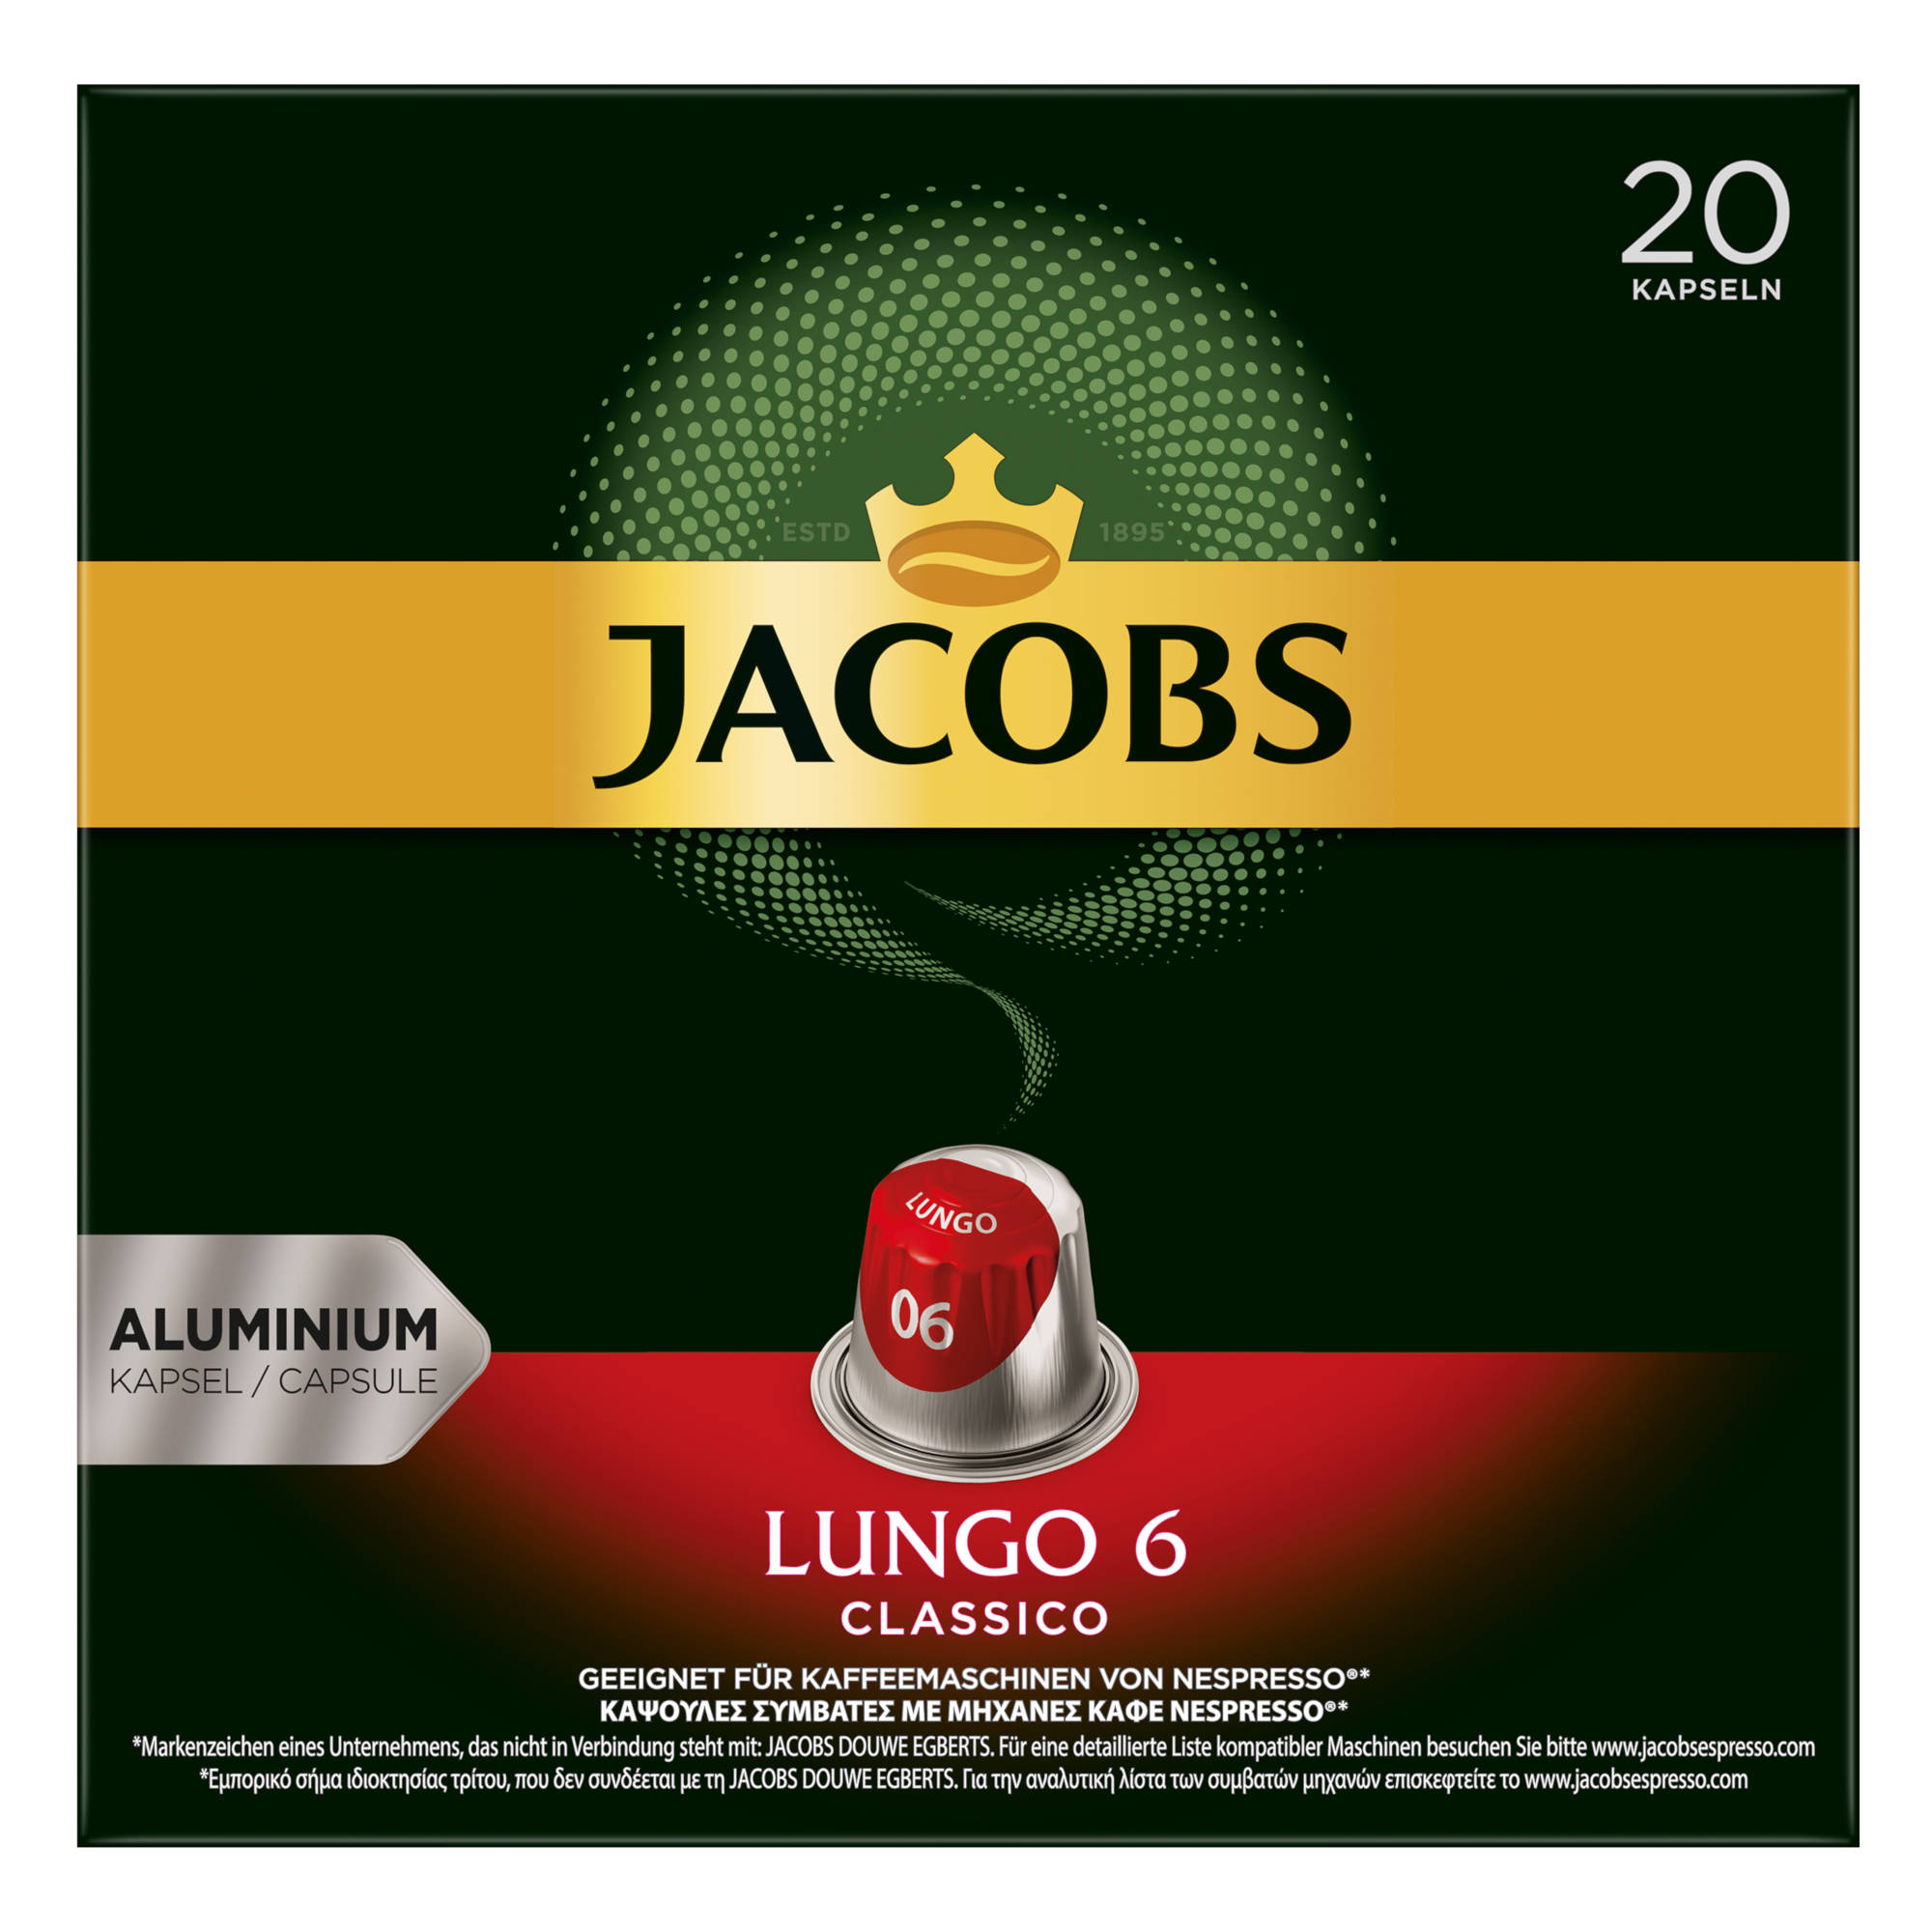 Lungo 10 20 6 System) Nespresso®* JACOBS kompatible Kaffeekapseln (Nespresso x Classico